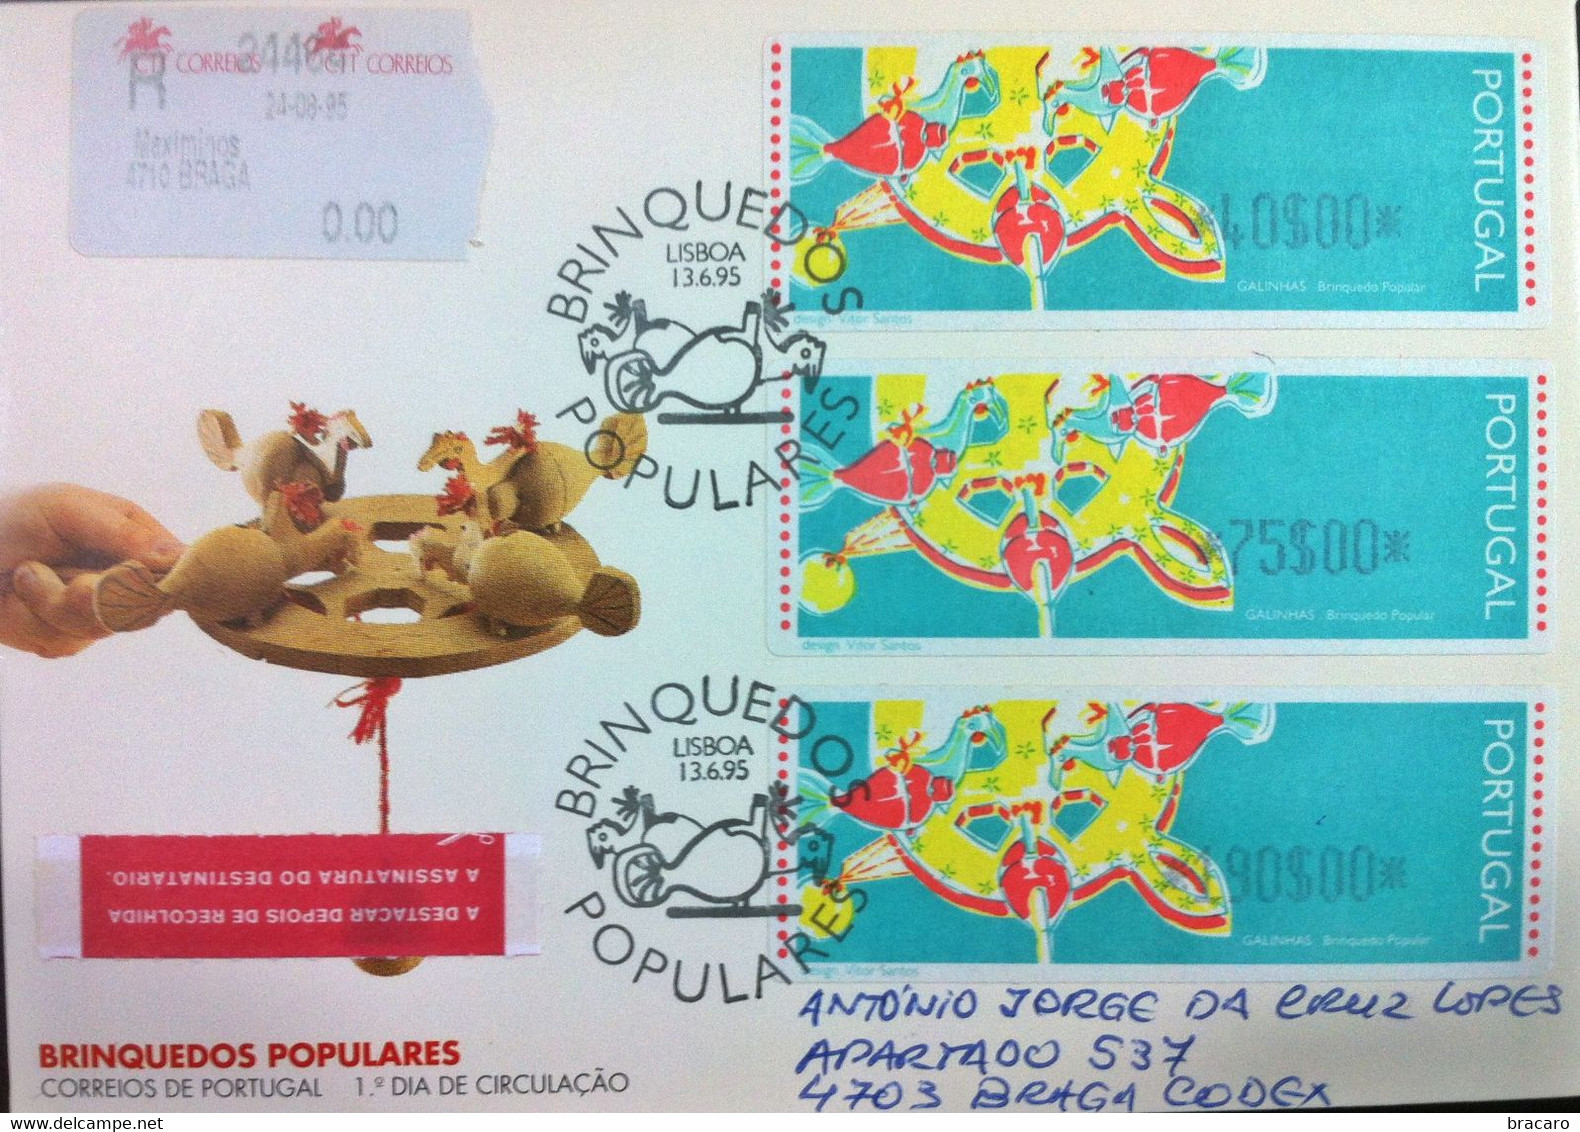 Portugal - ATM Machine Stamps - FDC (cover) - BRINQUEDOS POPULARES GALINHAS 1995 - Circulated, Registered, Cancel Braga - Máquinas Franqueo (EMA)